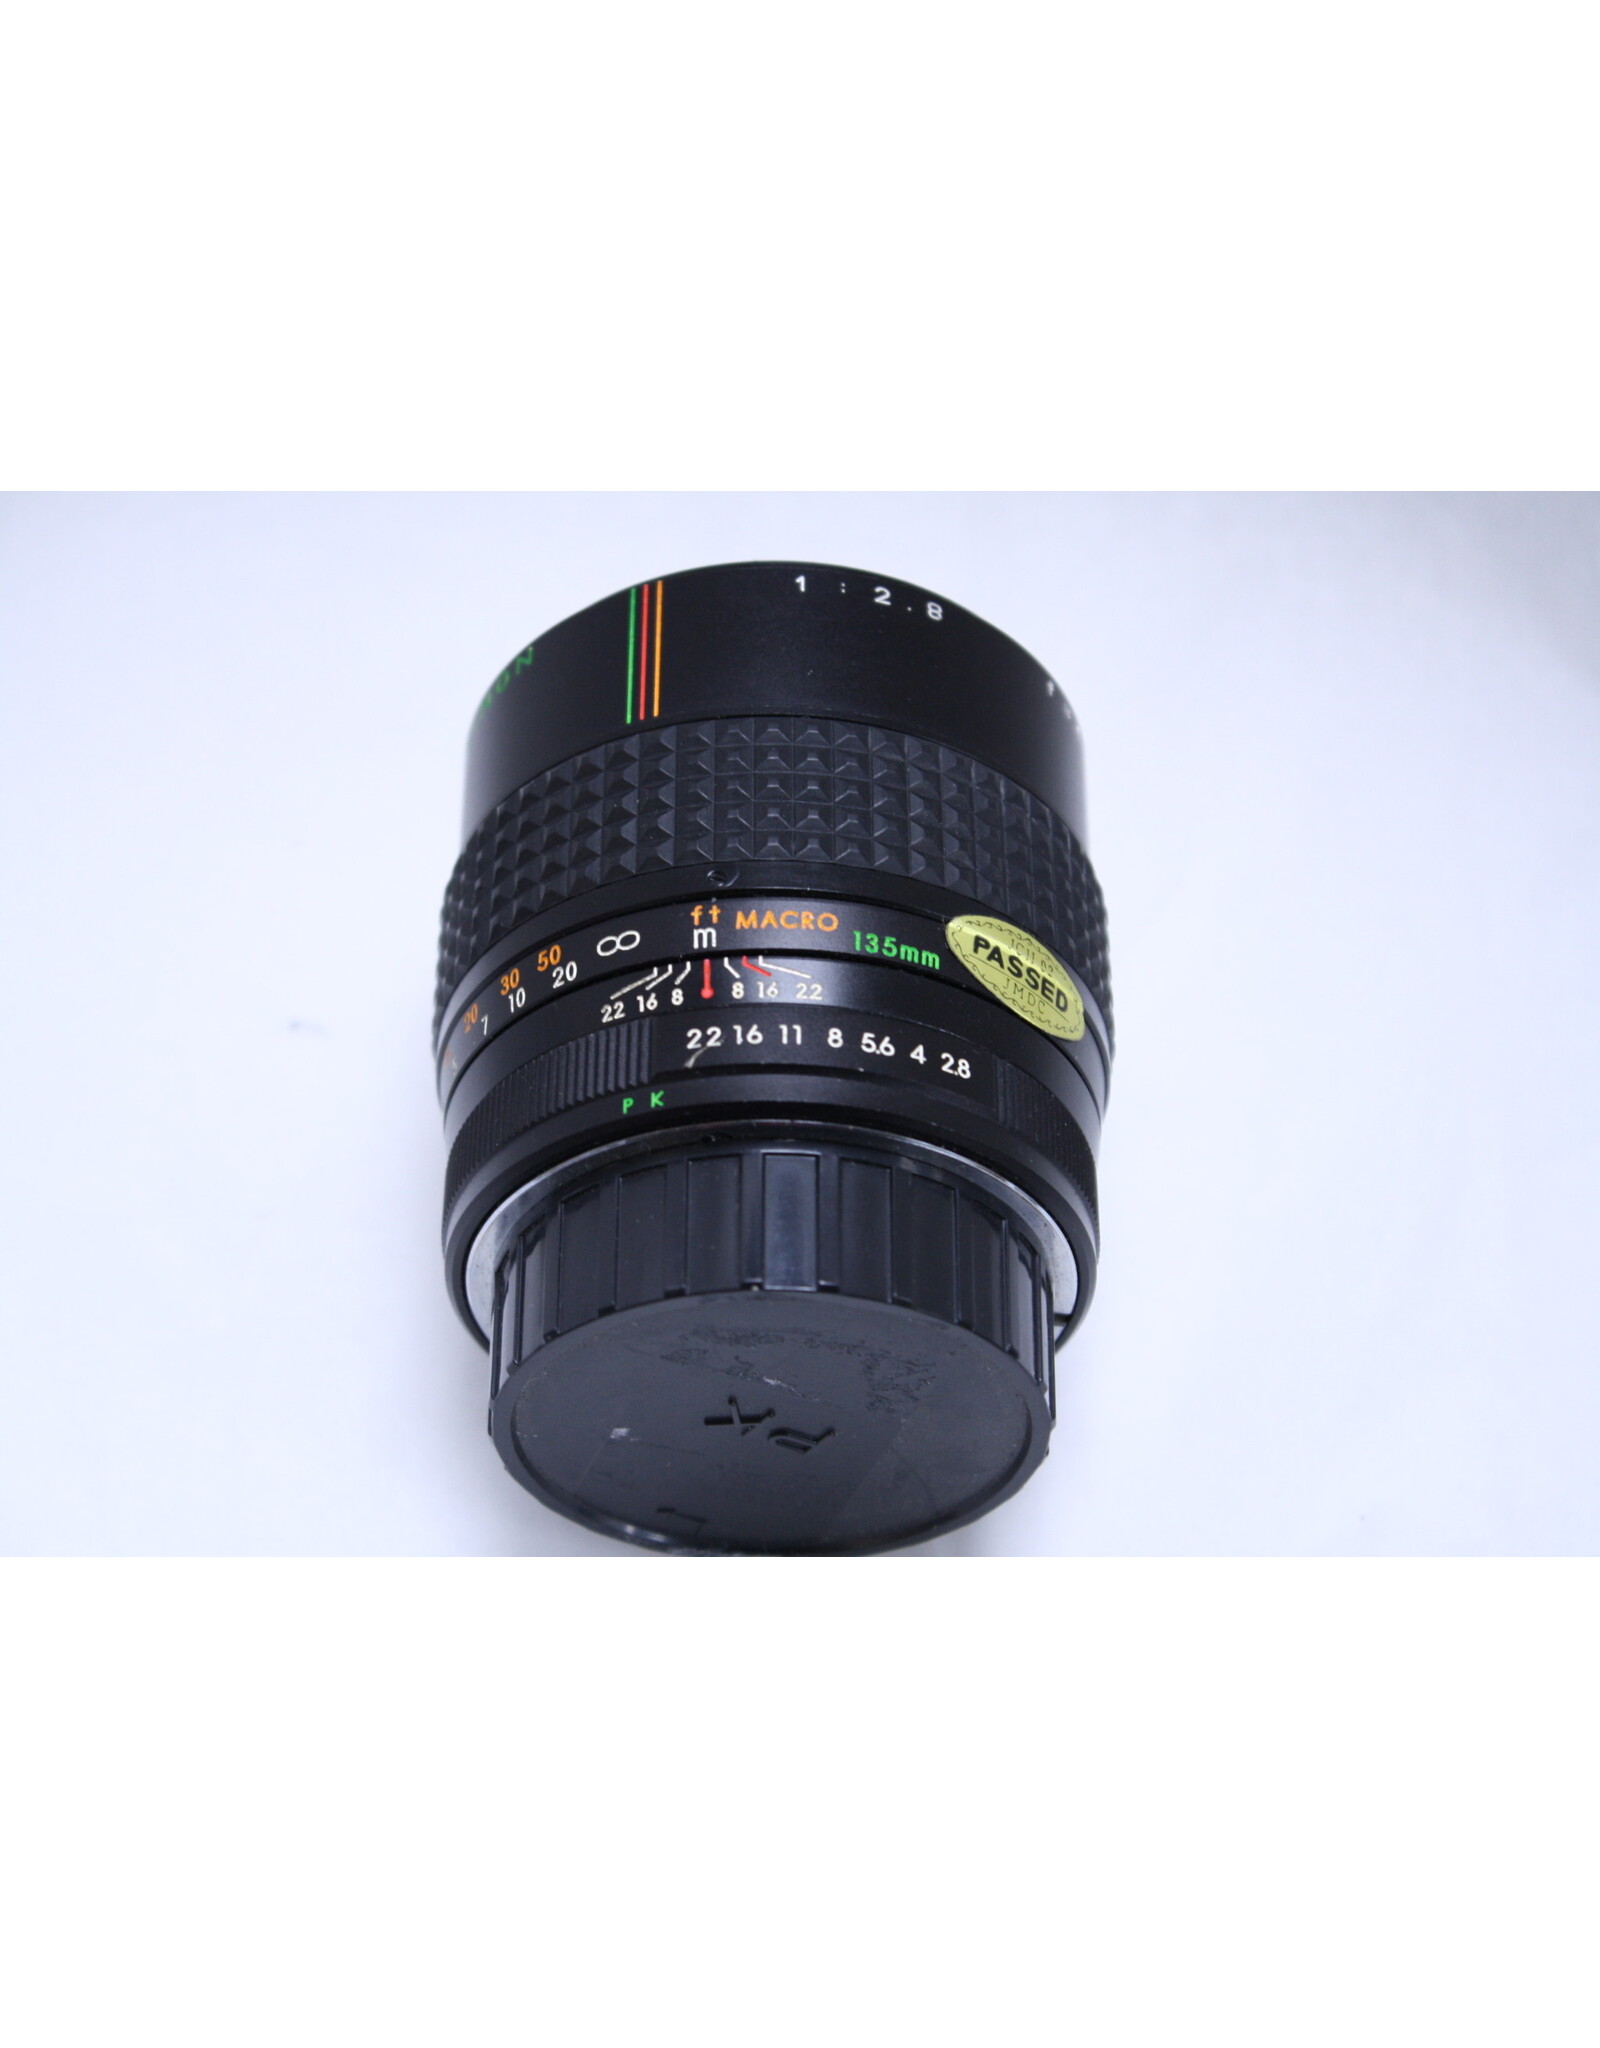 Makinon Makinon 135mm f2.8 Lens for Pen K